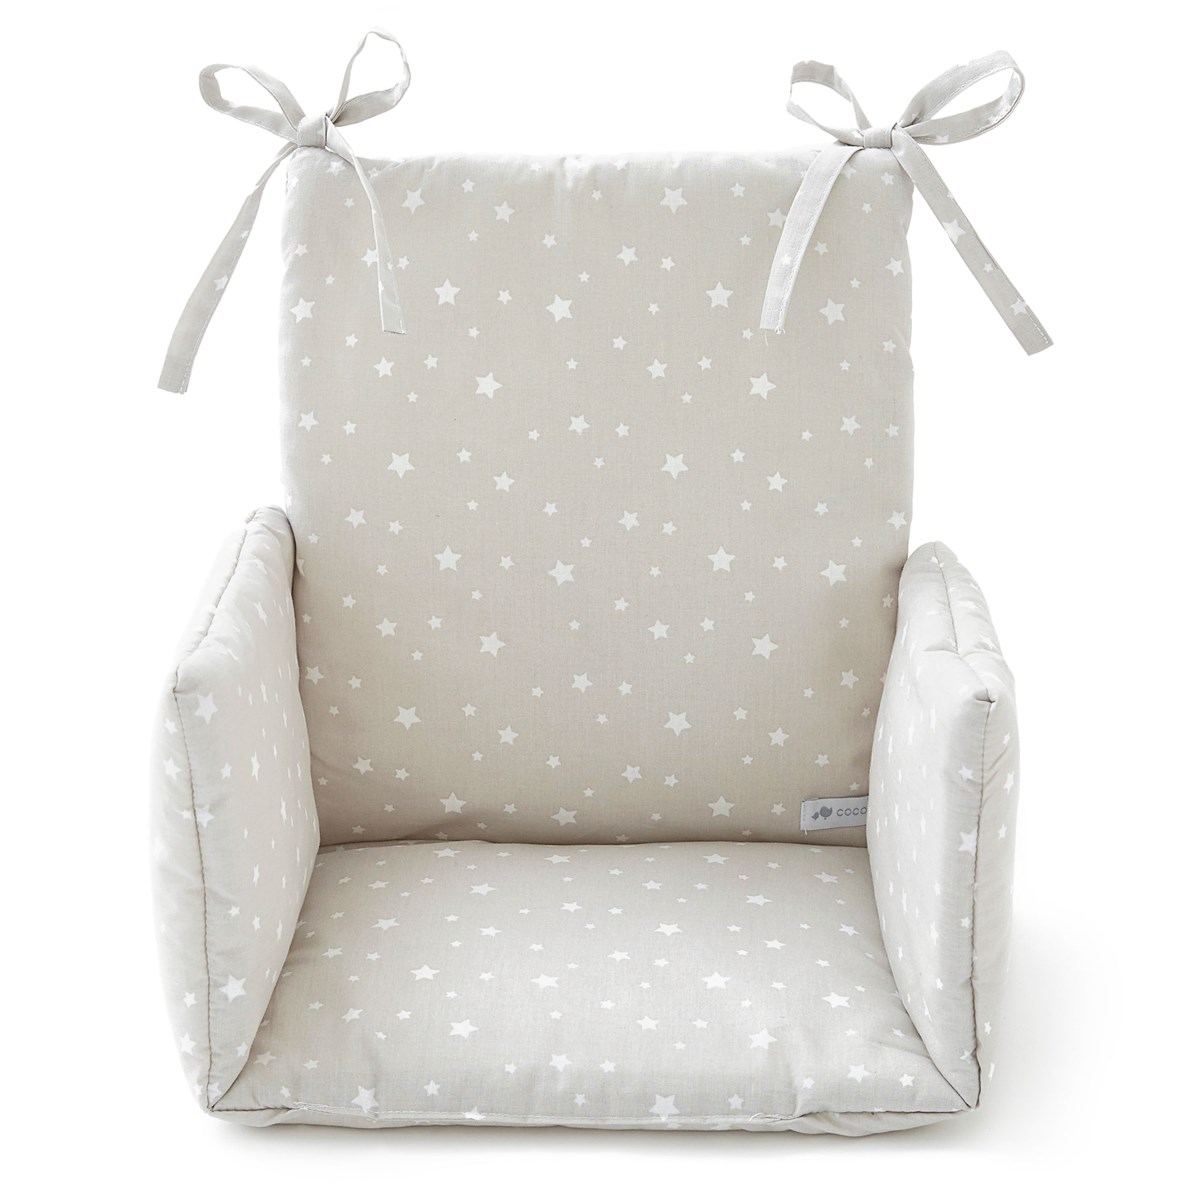 Coussin chaise haute etoile gris pastel